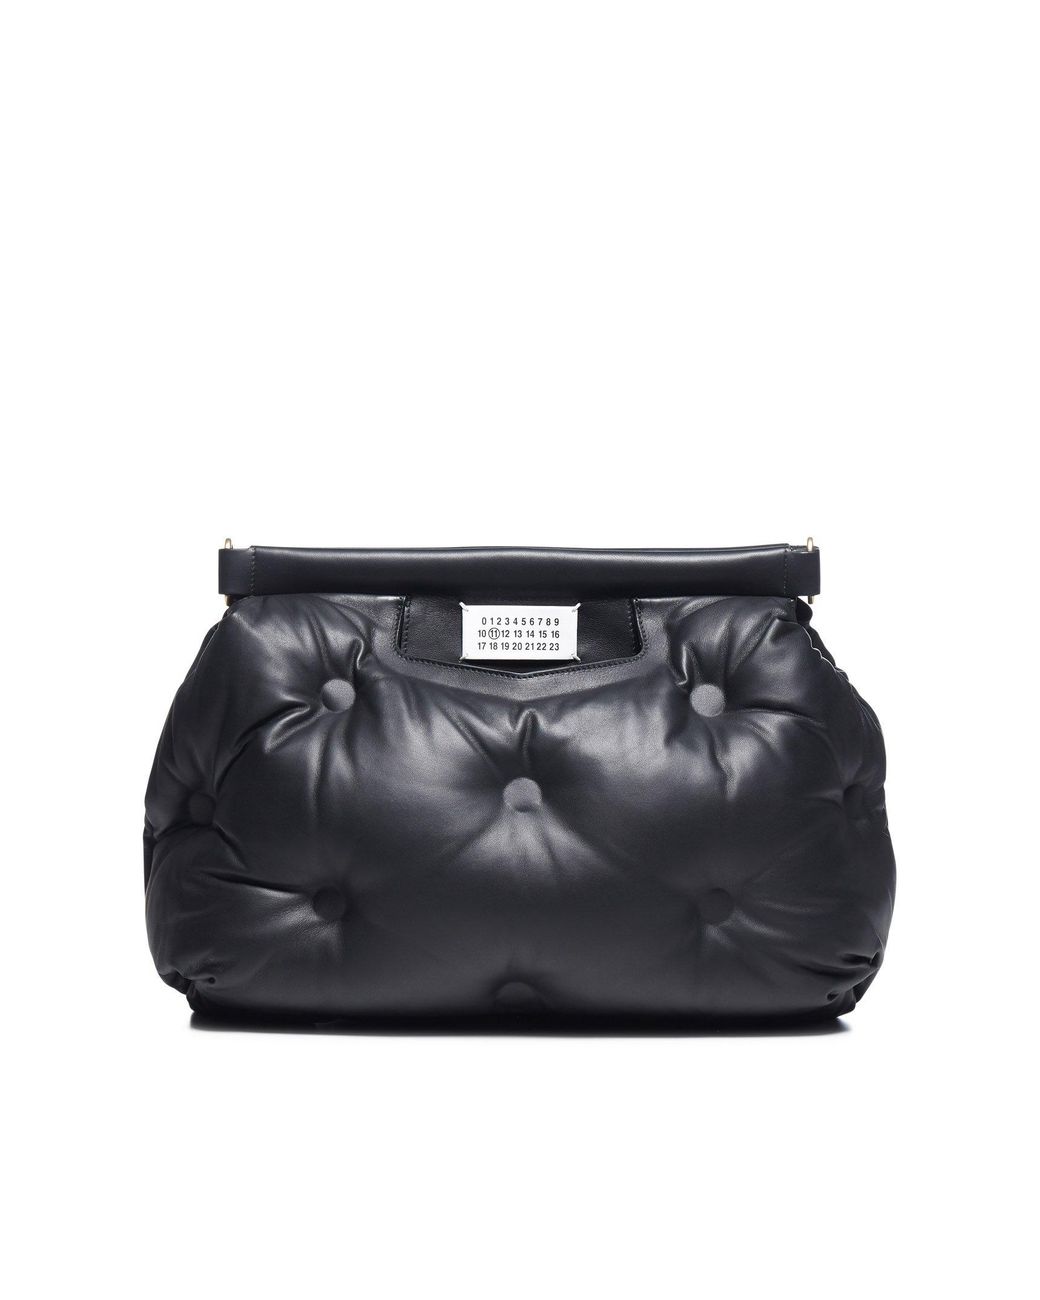 Maison Margiela Leather Glam Slam Shoulder Bag in Black - Lyst